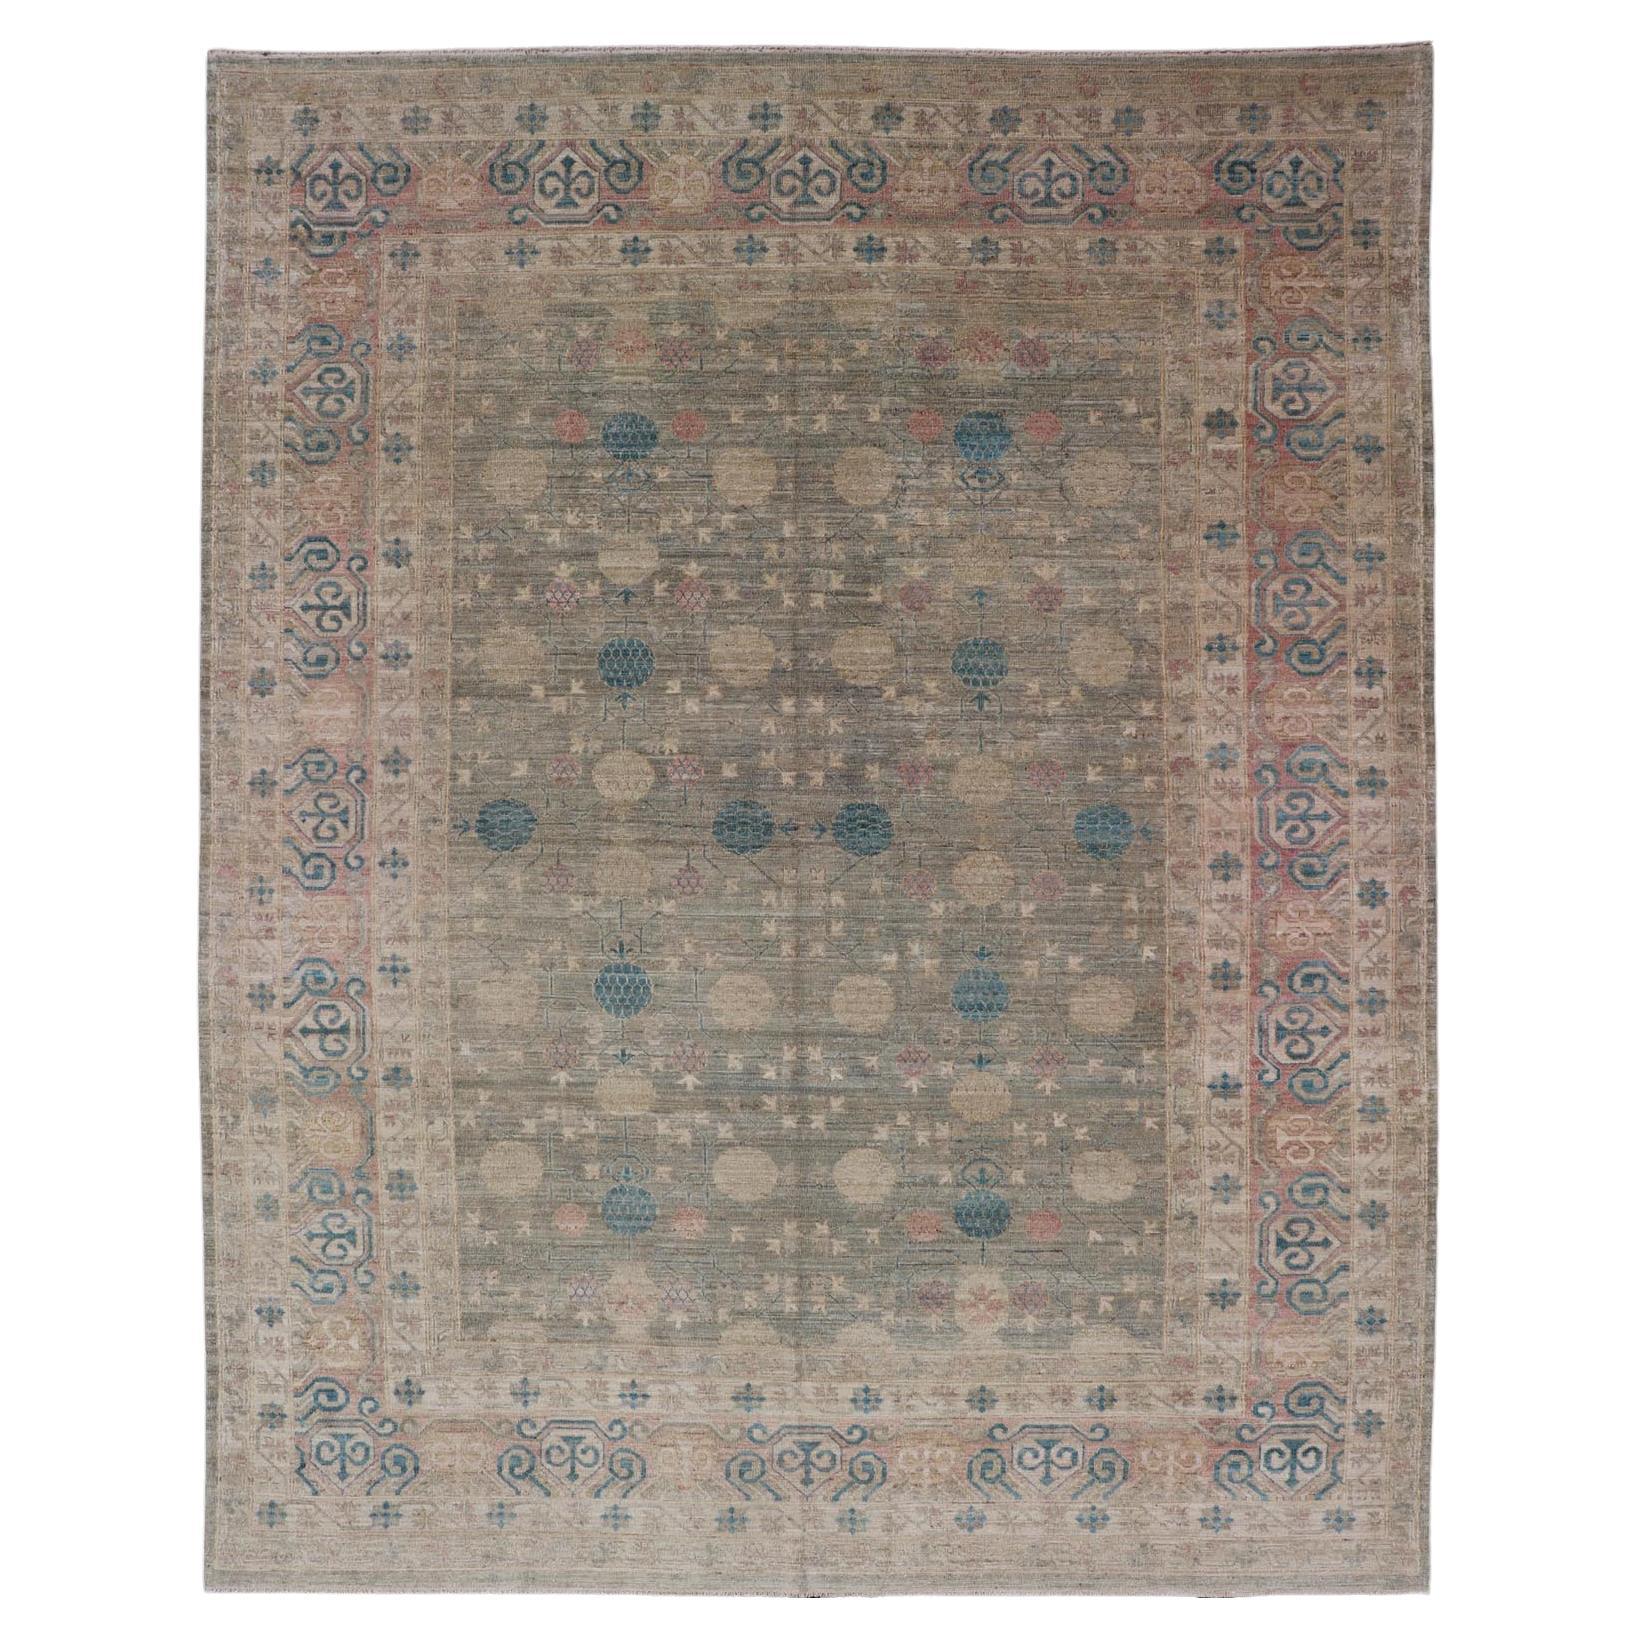 Großer moderner Khotan-Teppich aus Stammeskunst in Creme, Grün, Blau und Koralle